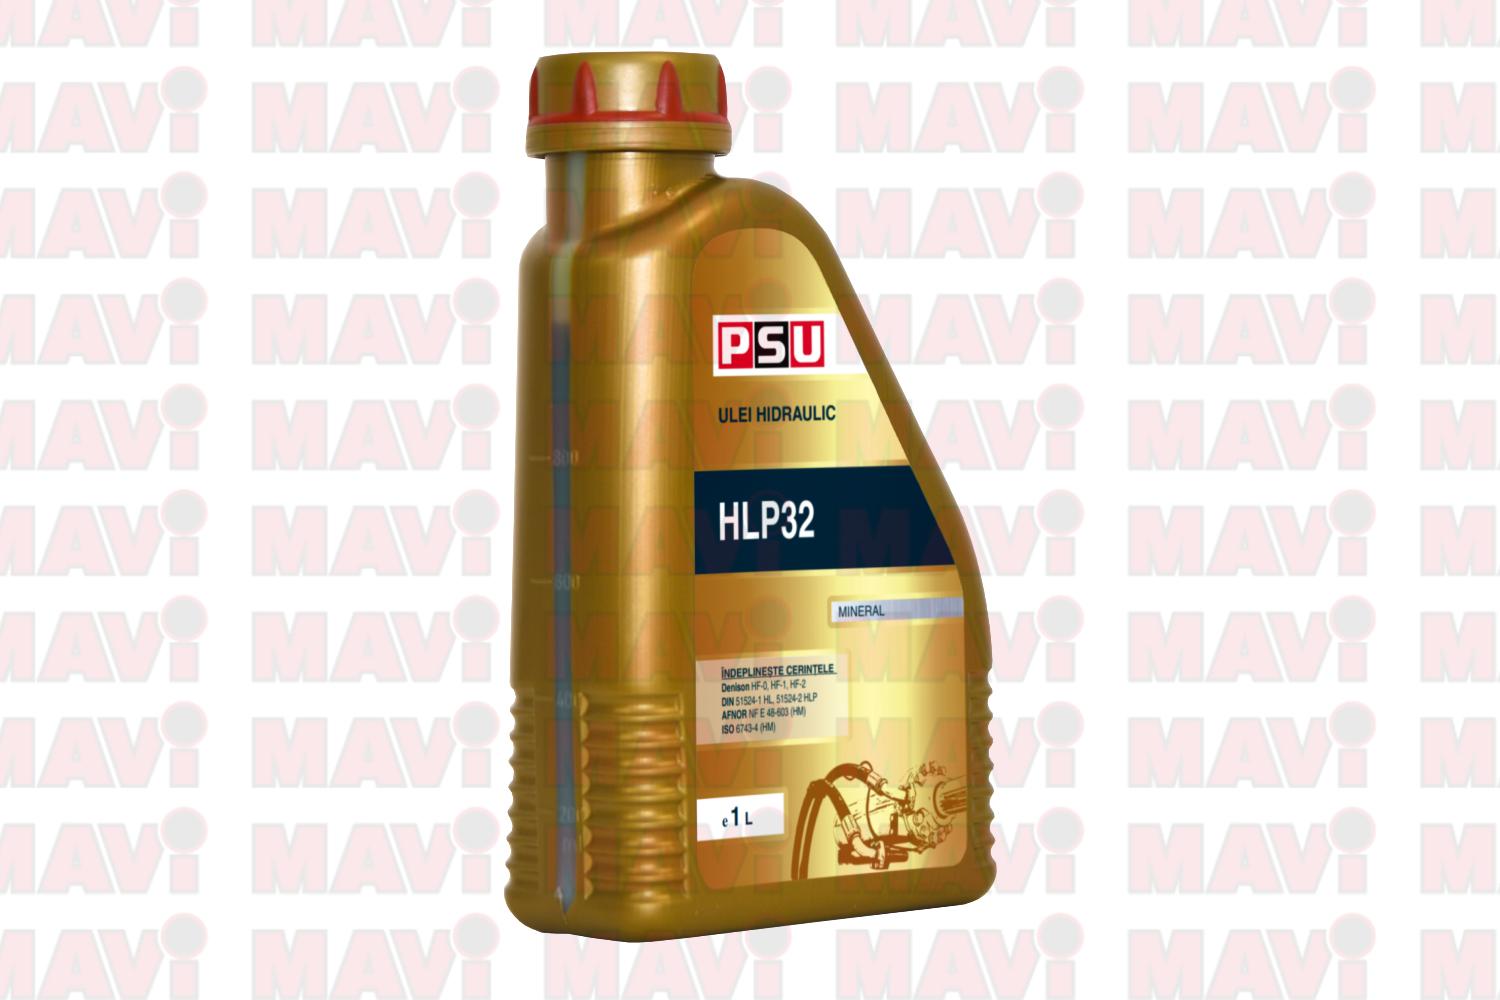 ULEI HIDRAULIC HLP32 1L PSU